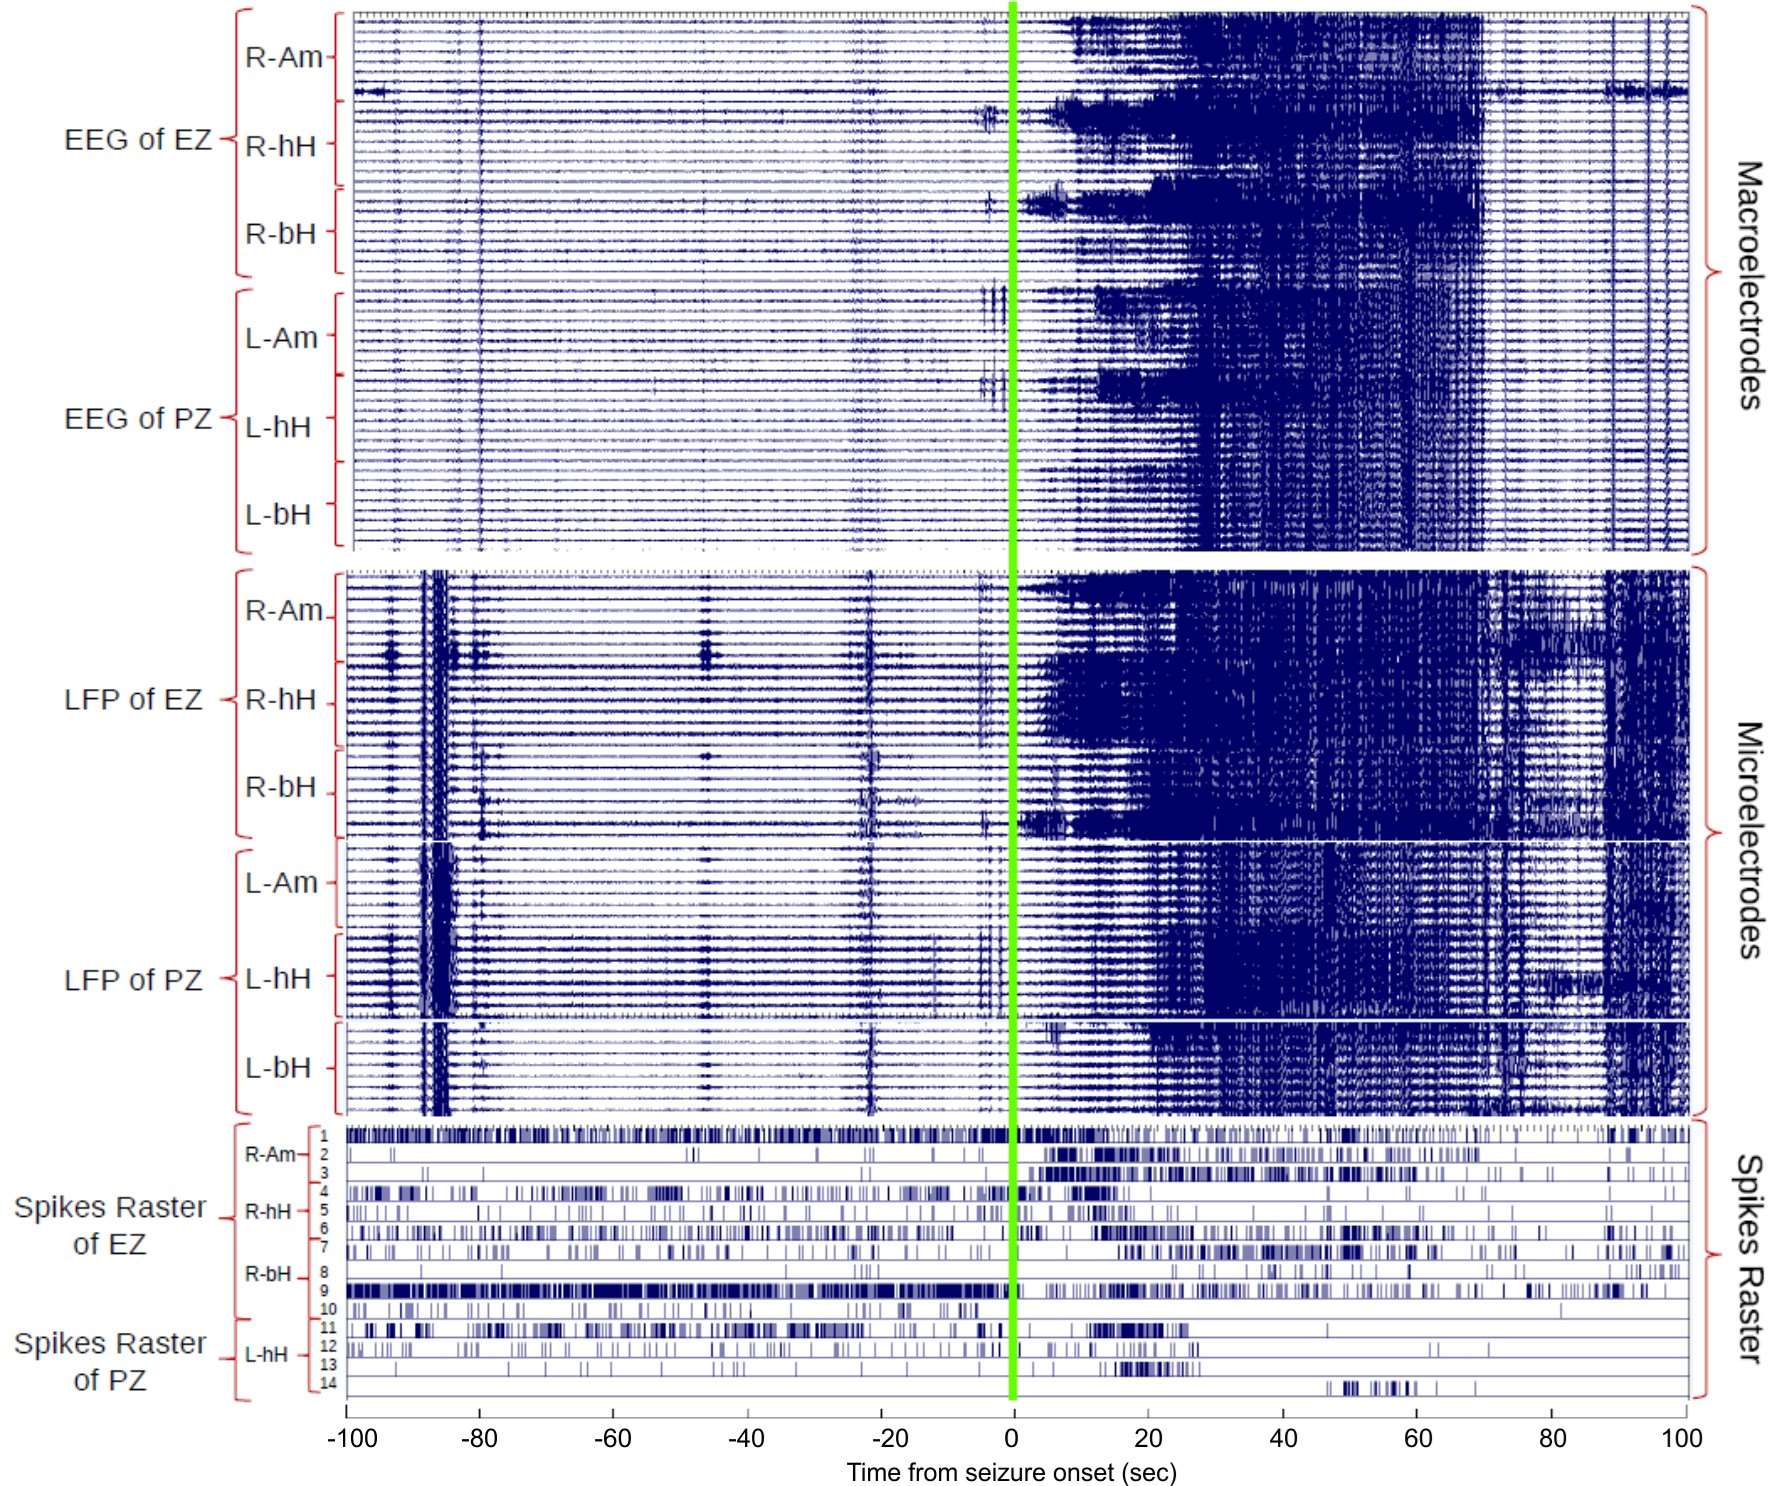 Multiscale simultaneous recordings of brain impulses during seizure